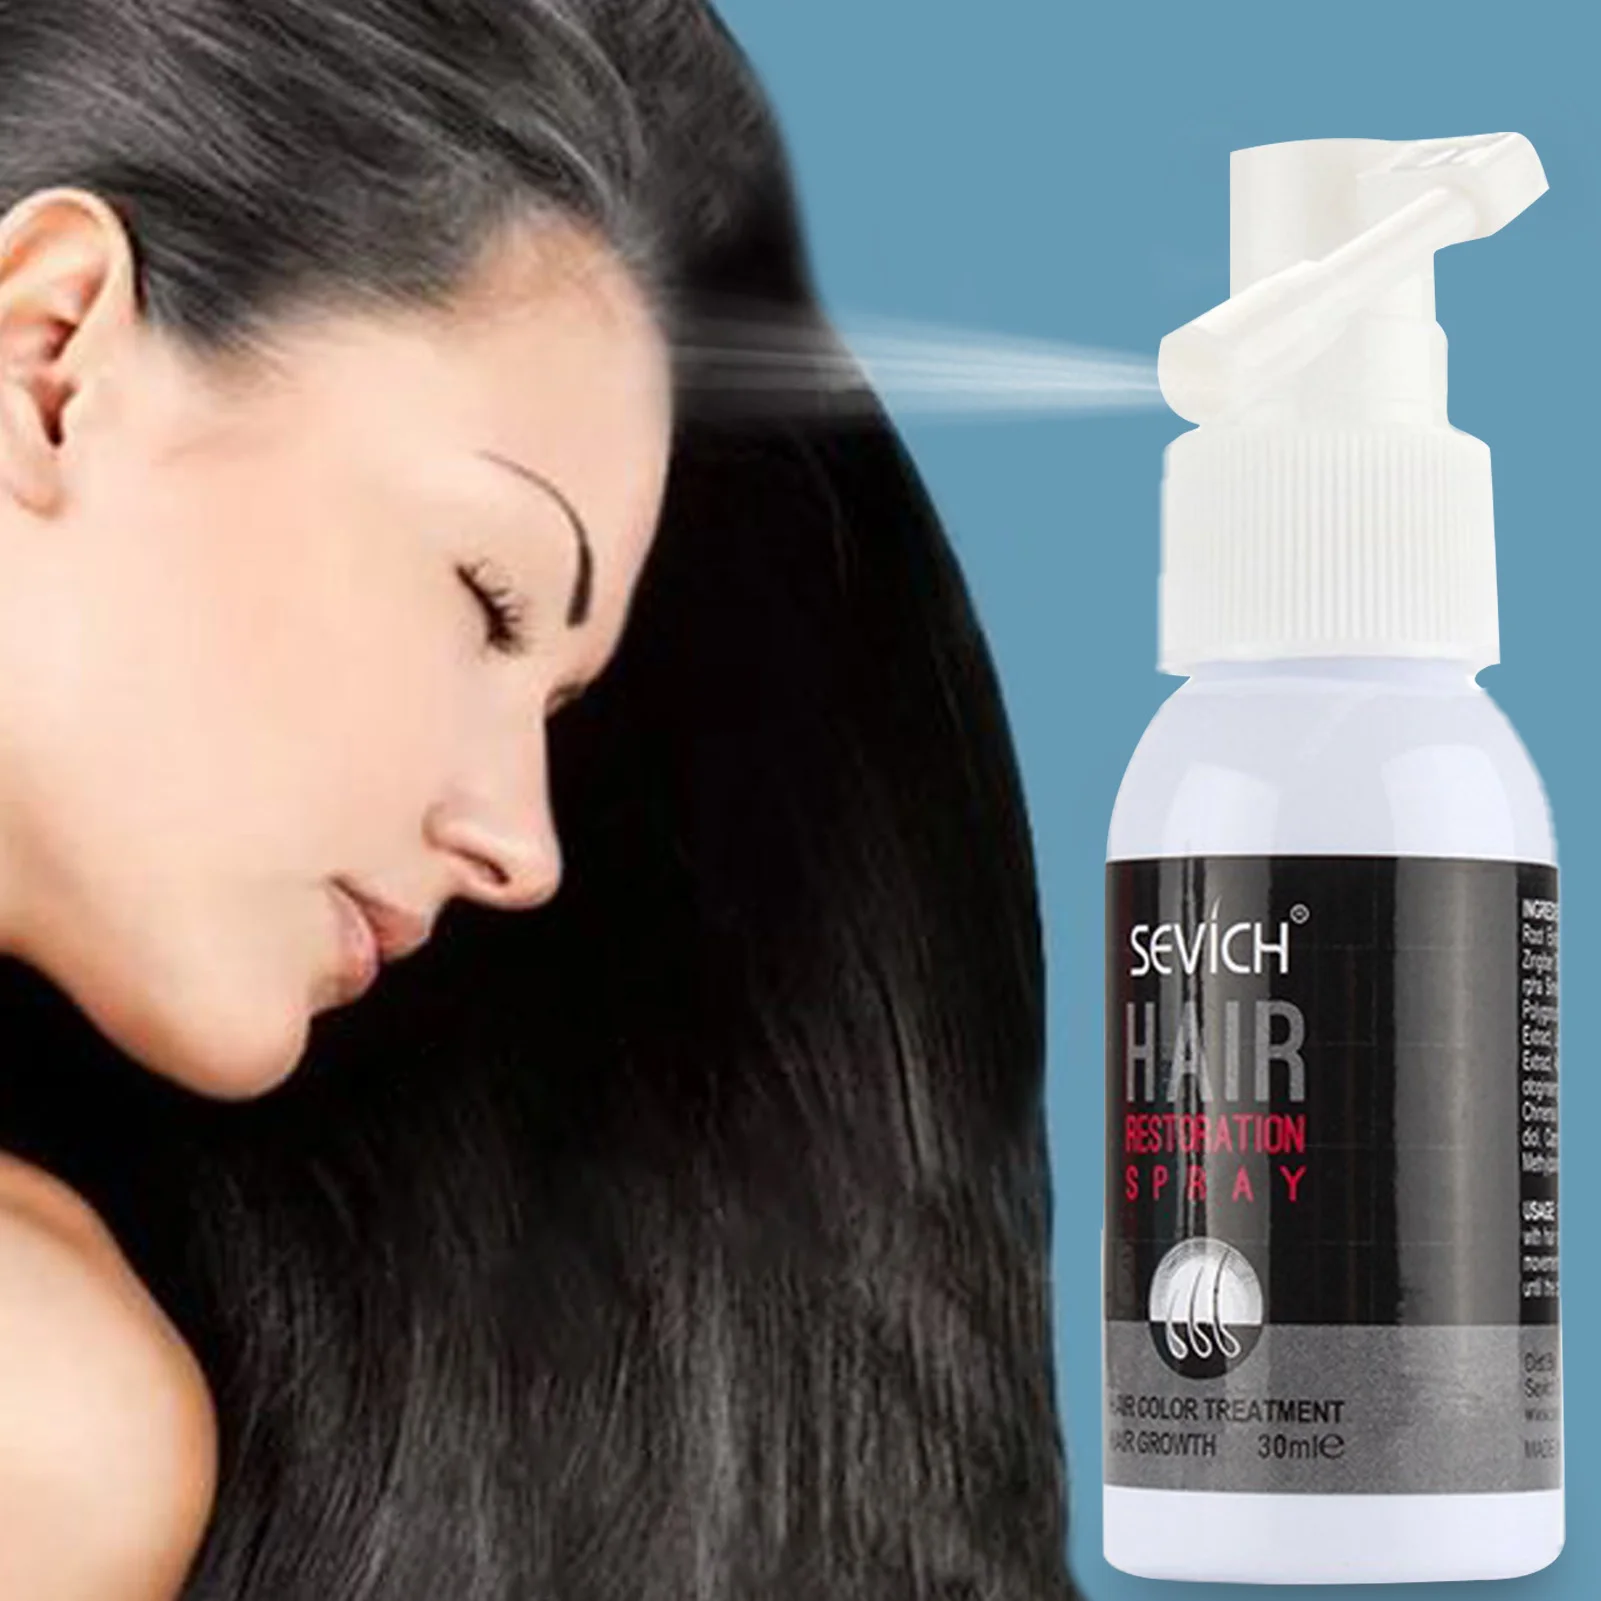 

Более густая Сыворотка для роста волос восстанавливает блестящие и блестящие волосы китайские травяные экстракты 30 мл средство для роста в...